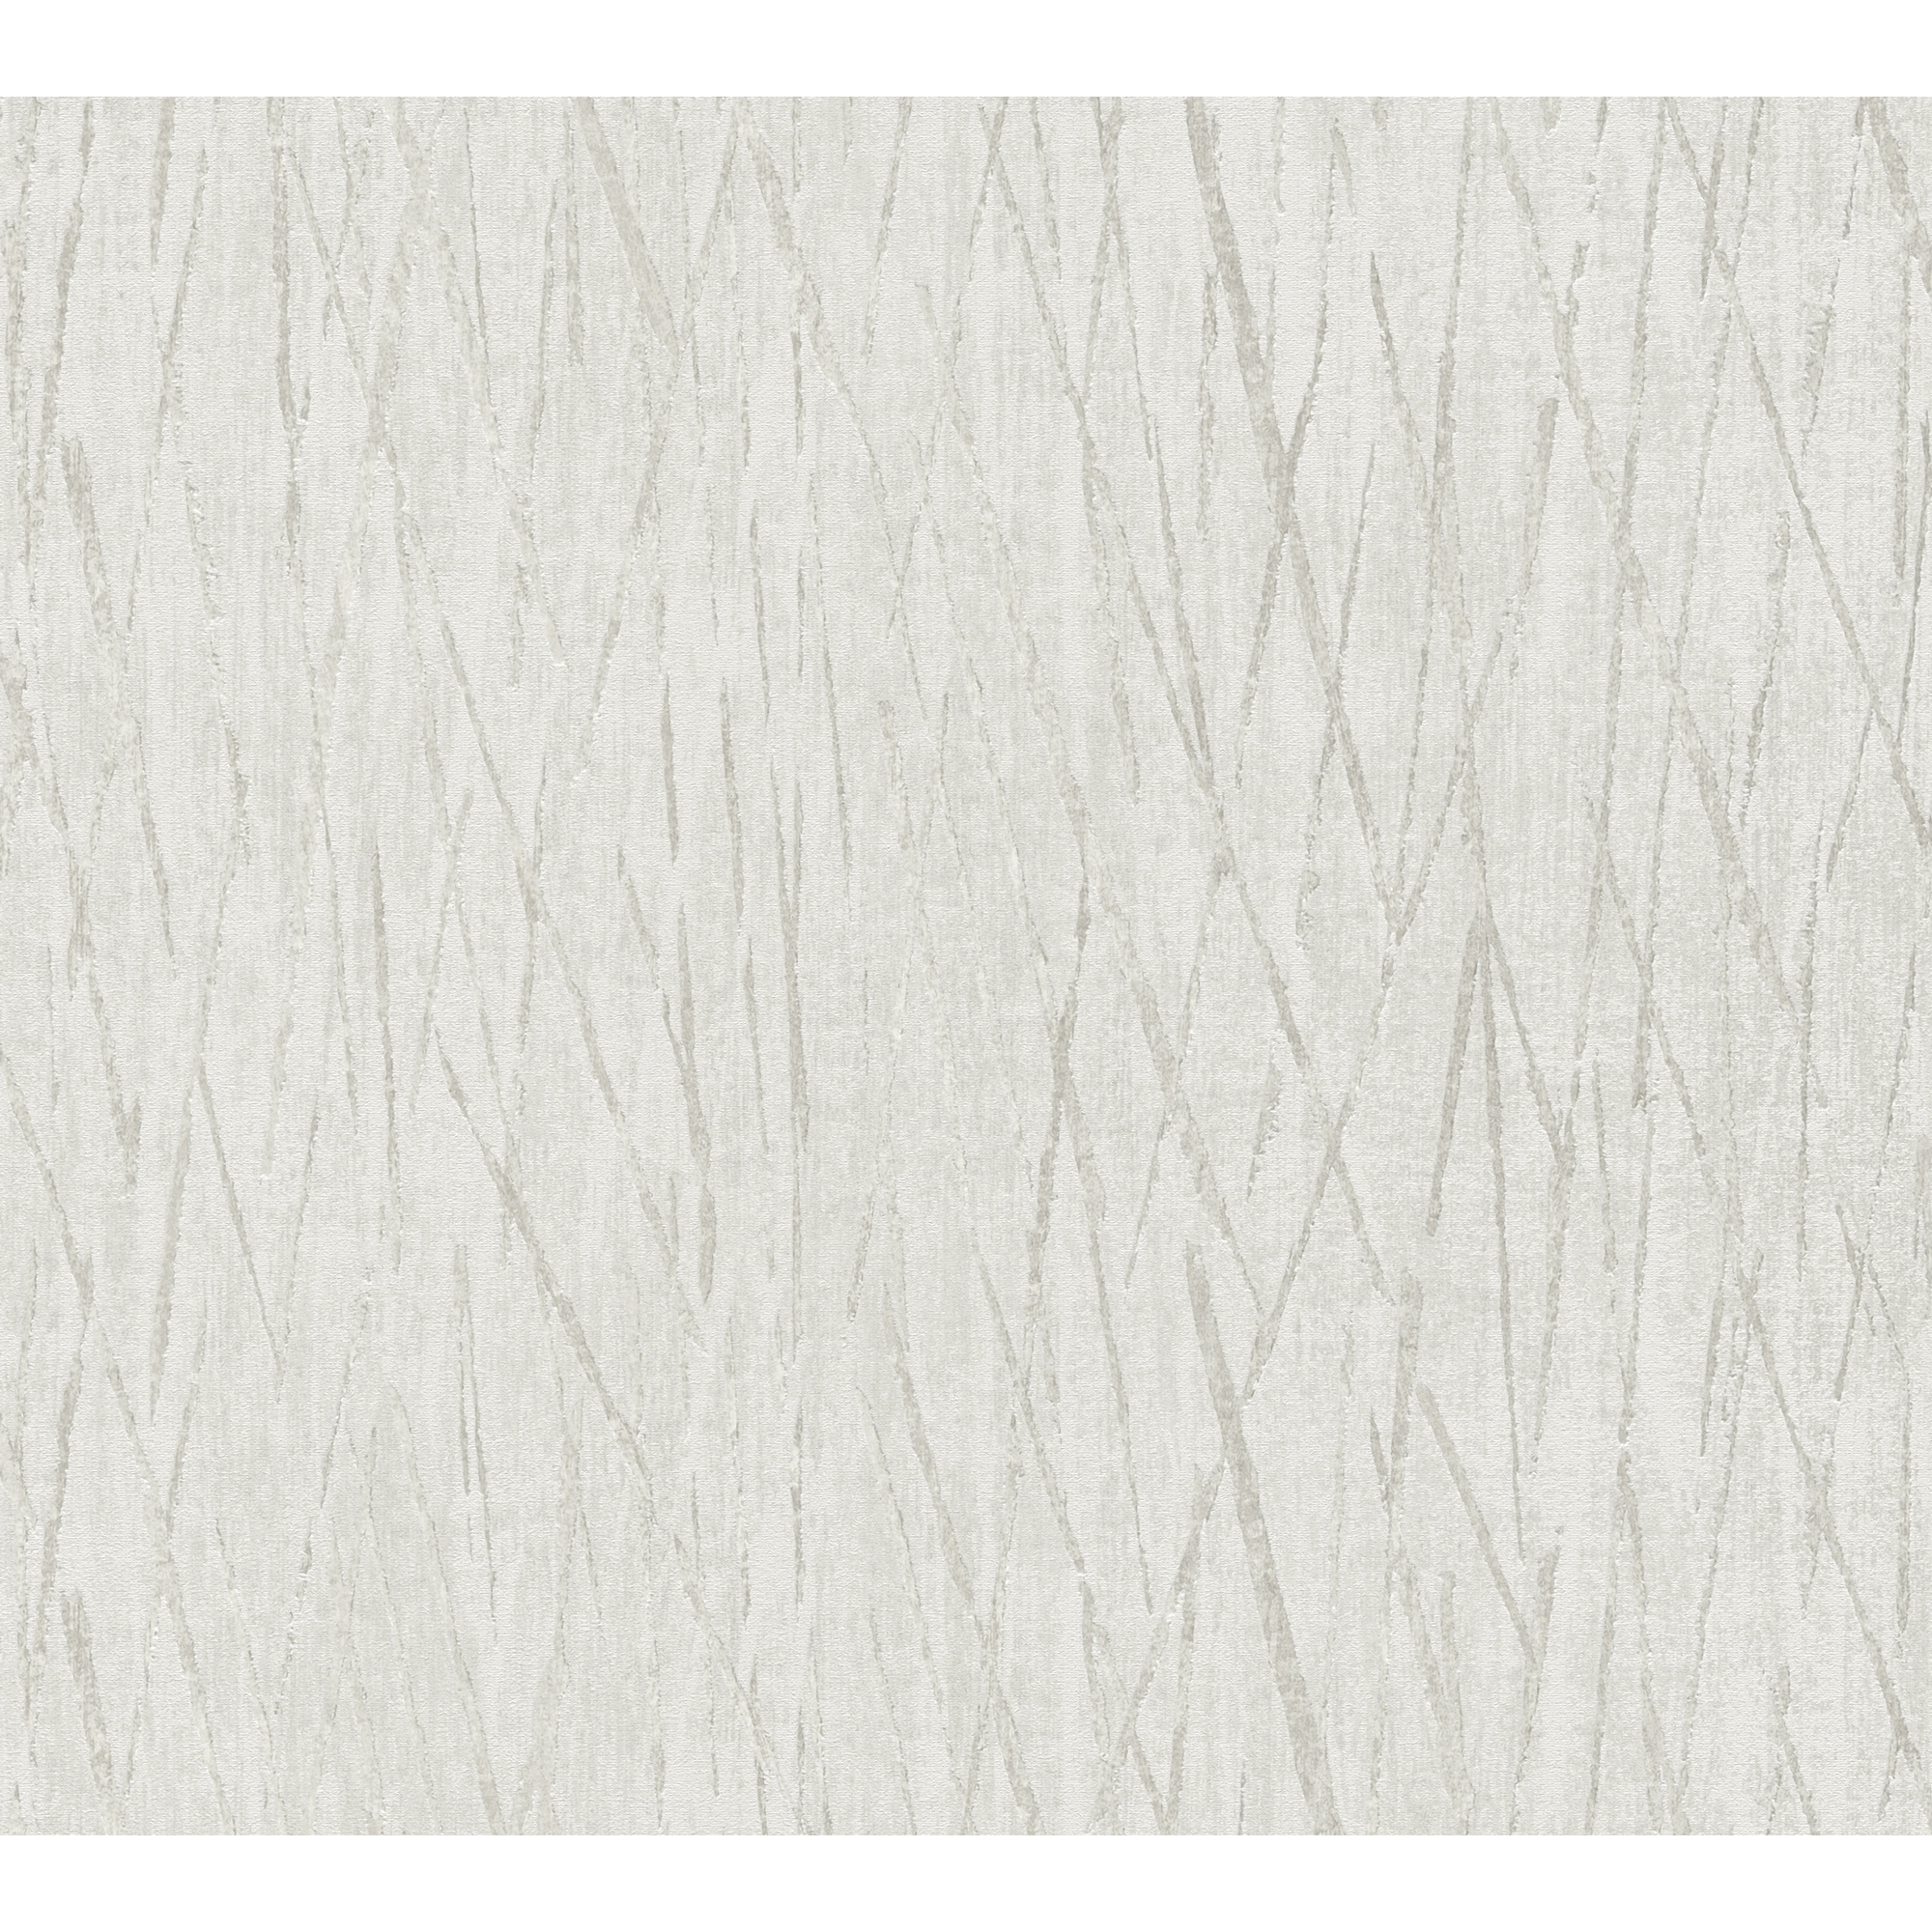 Vliestapete 'Hygge 2' Streifen grau/weiß 10,05 x 0,53 m + product picture